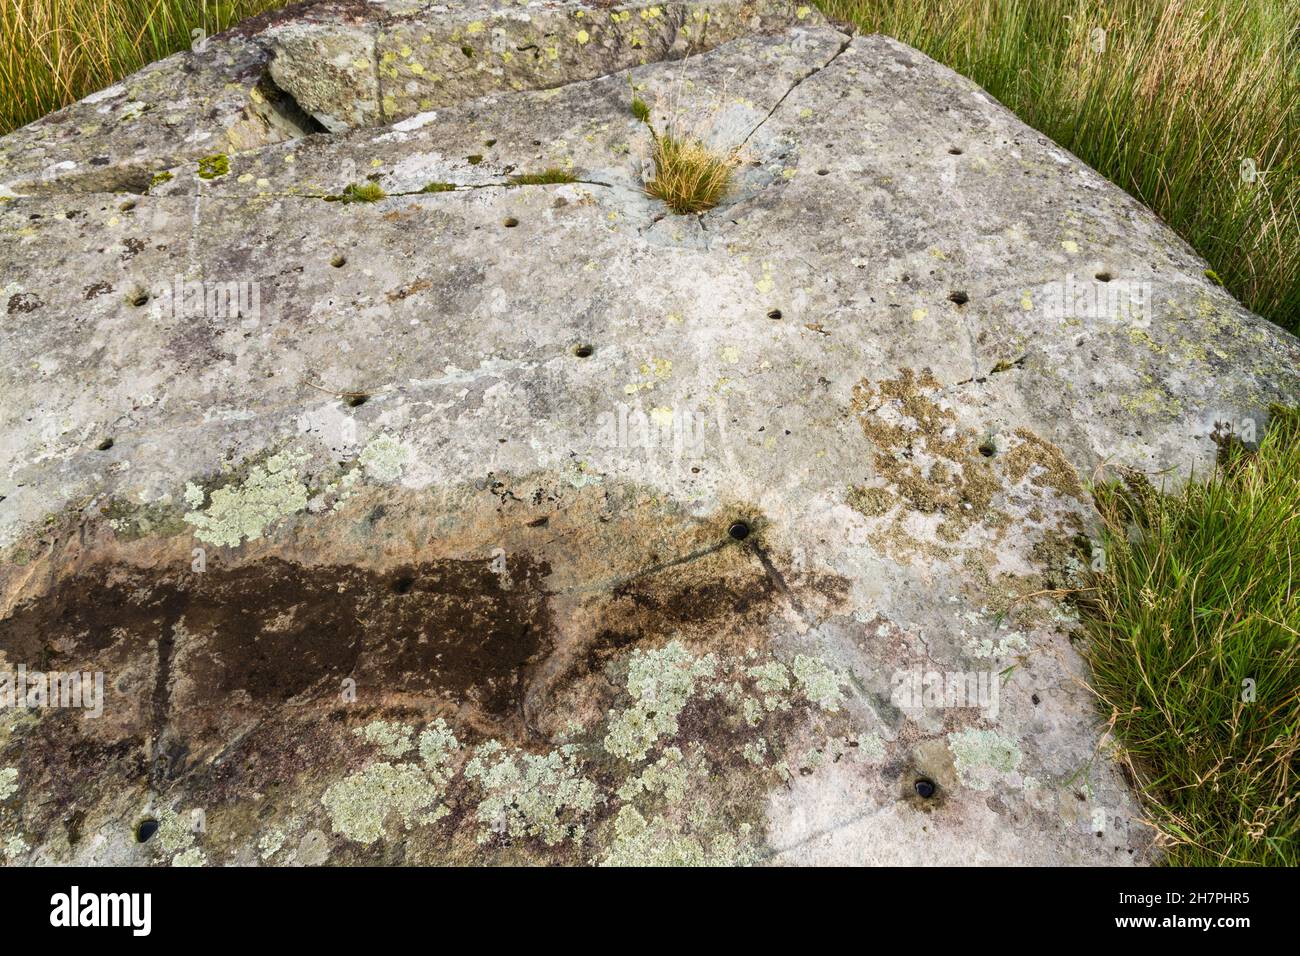 North Wales Rock Cannon, trous dans le rocher ou le rocher.Poudre à canon utilisée pour faire des bangs dans les célébrations. Banque D'Images